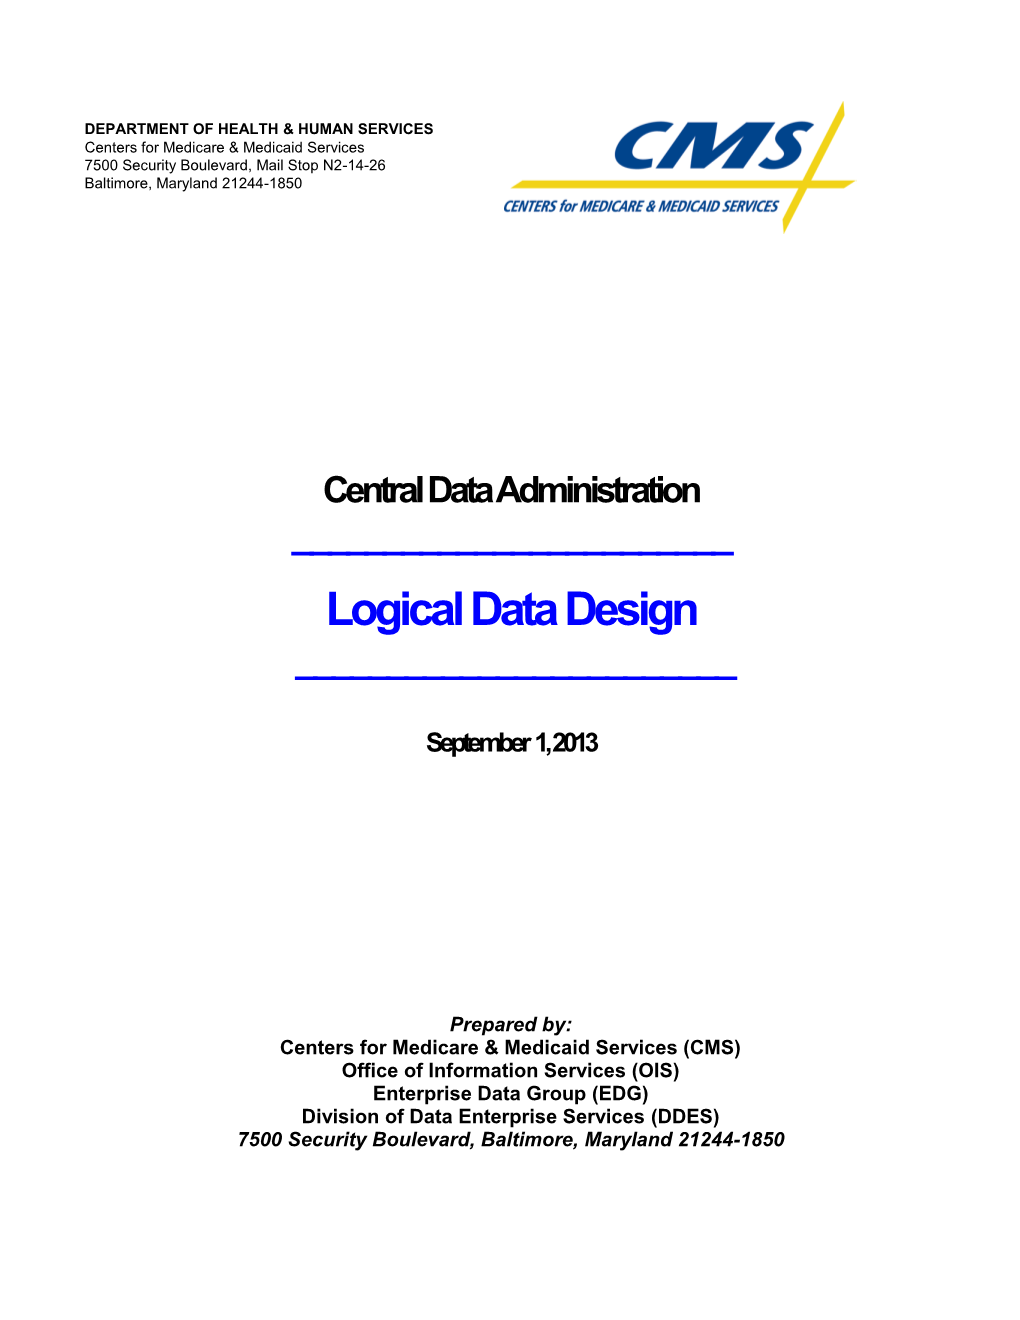 CDA Logical Data Design